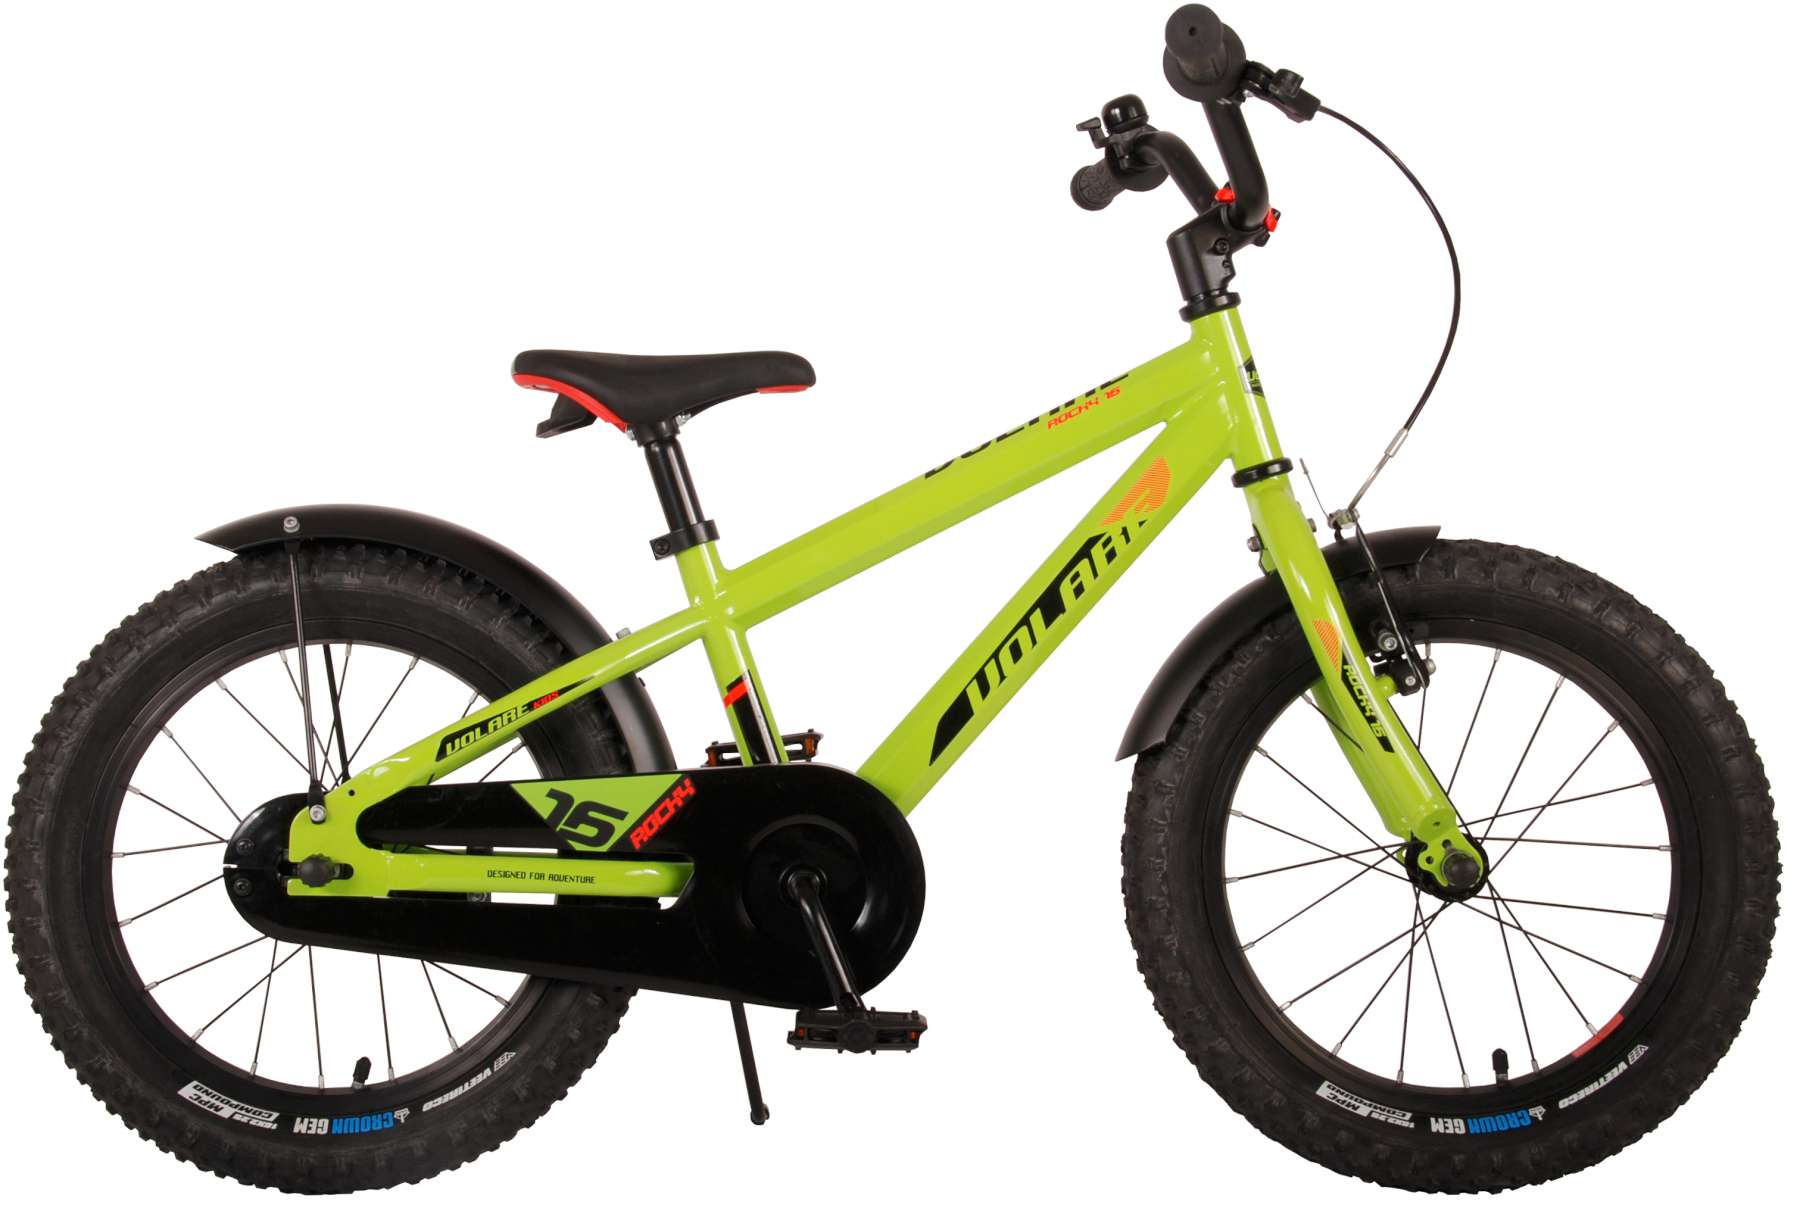 Zipper Vélo D'équilibre Électrique Pour Enfants 200w 16 Pouces - Vert